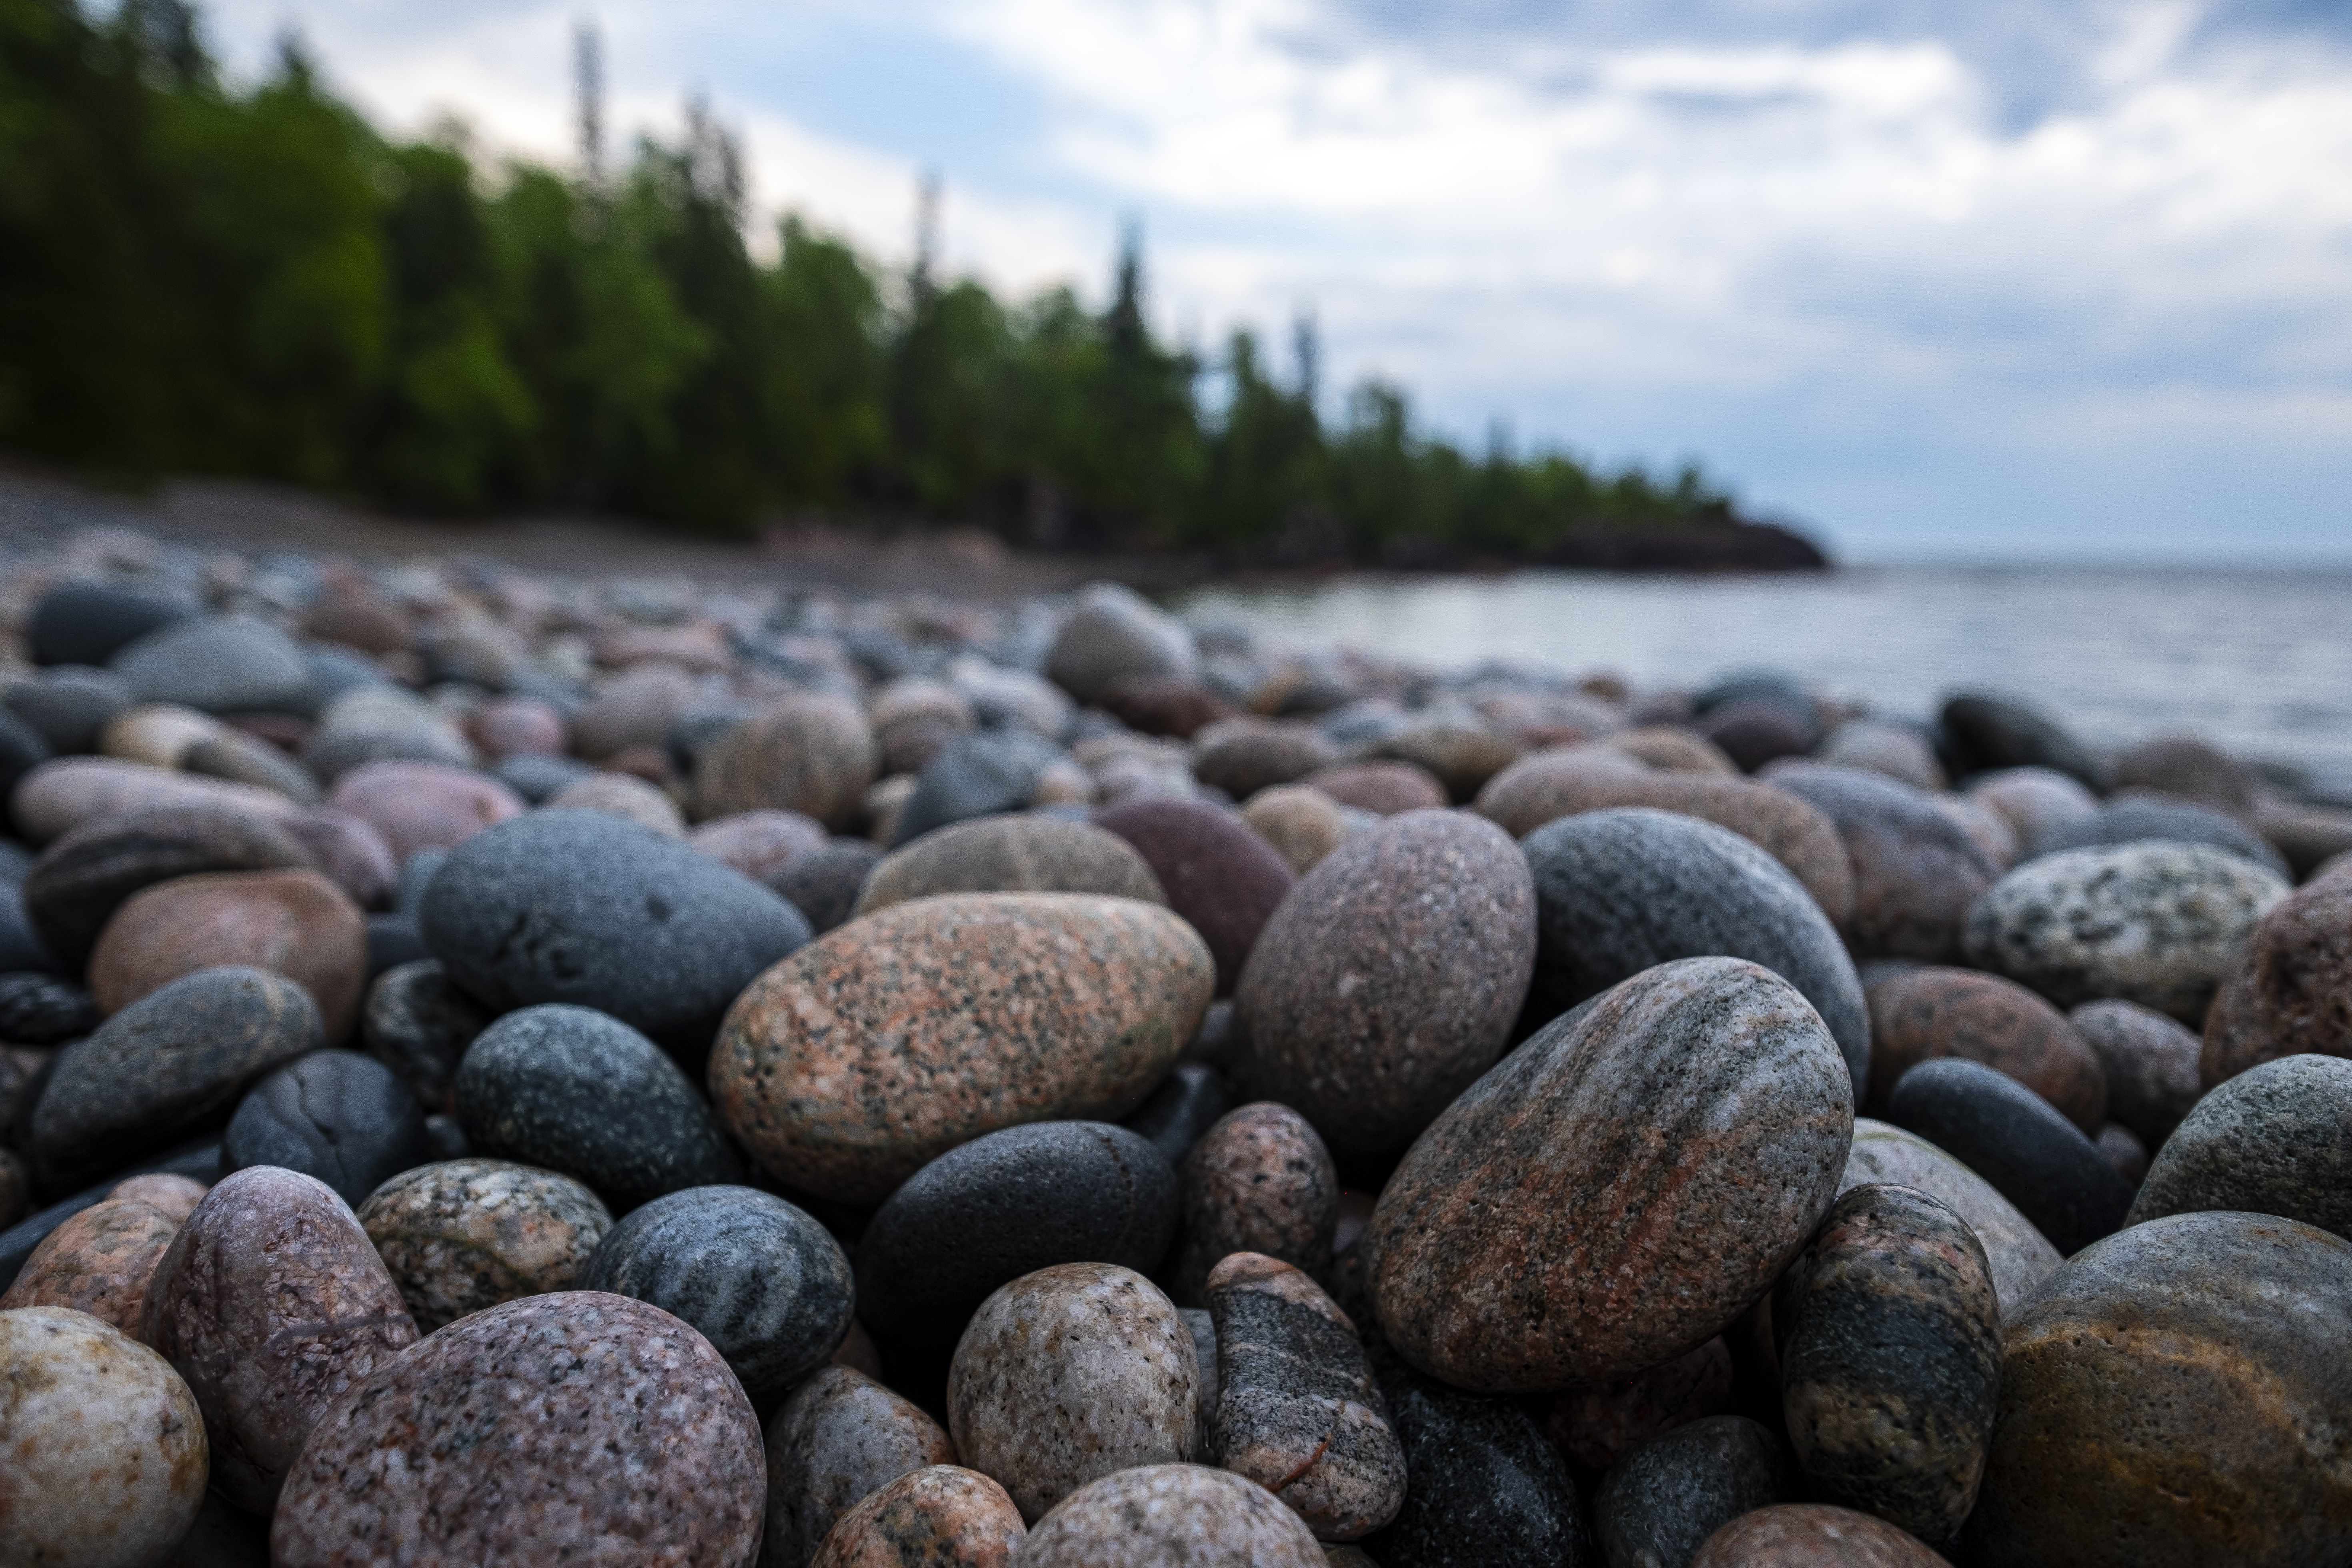 Shore Stones Pebbles Sea Water